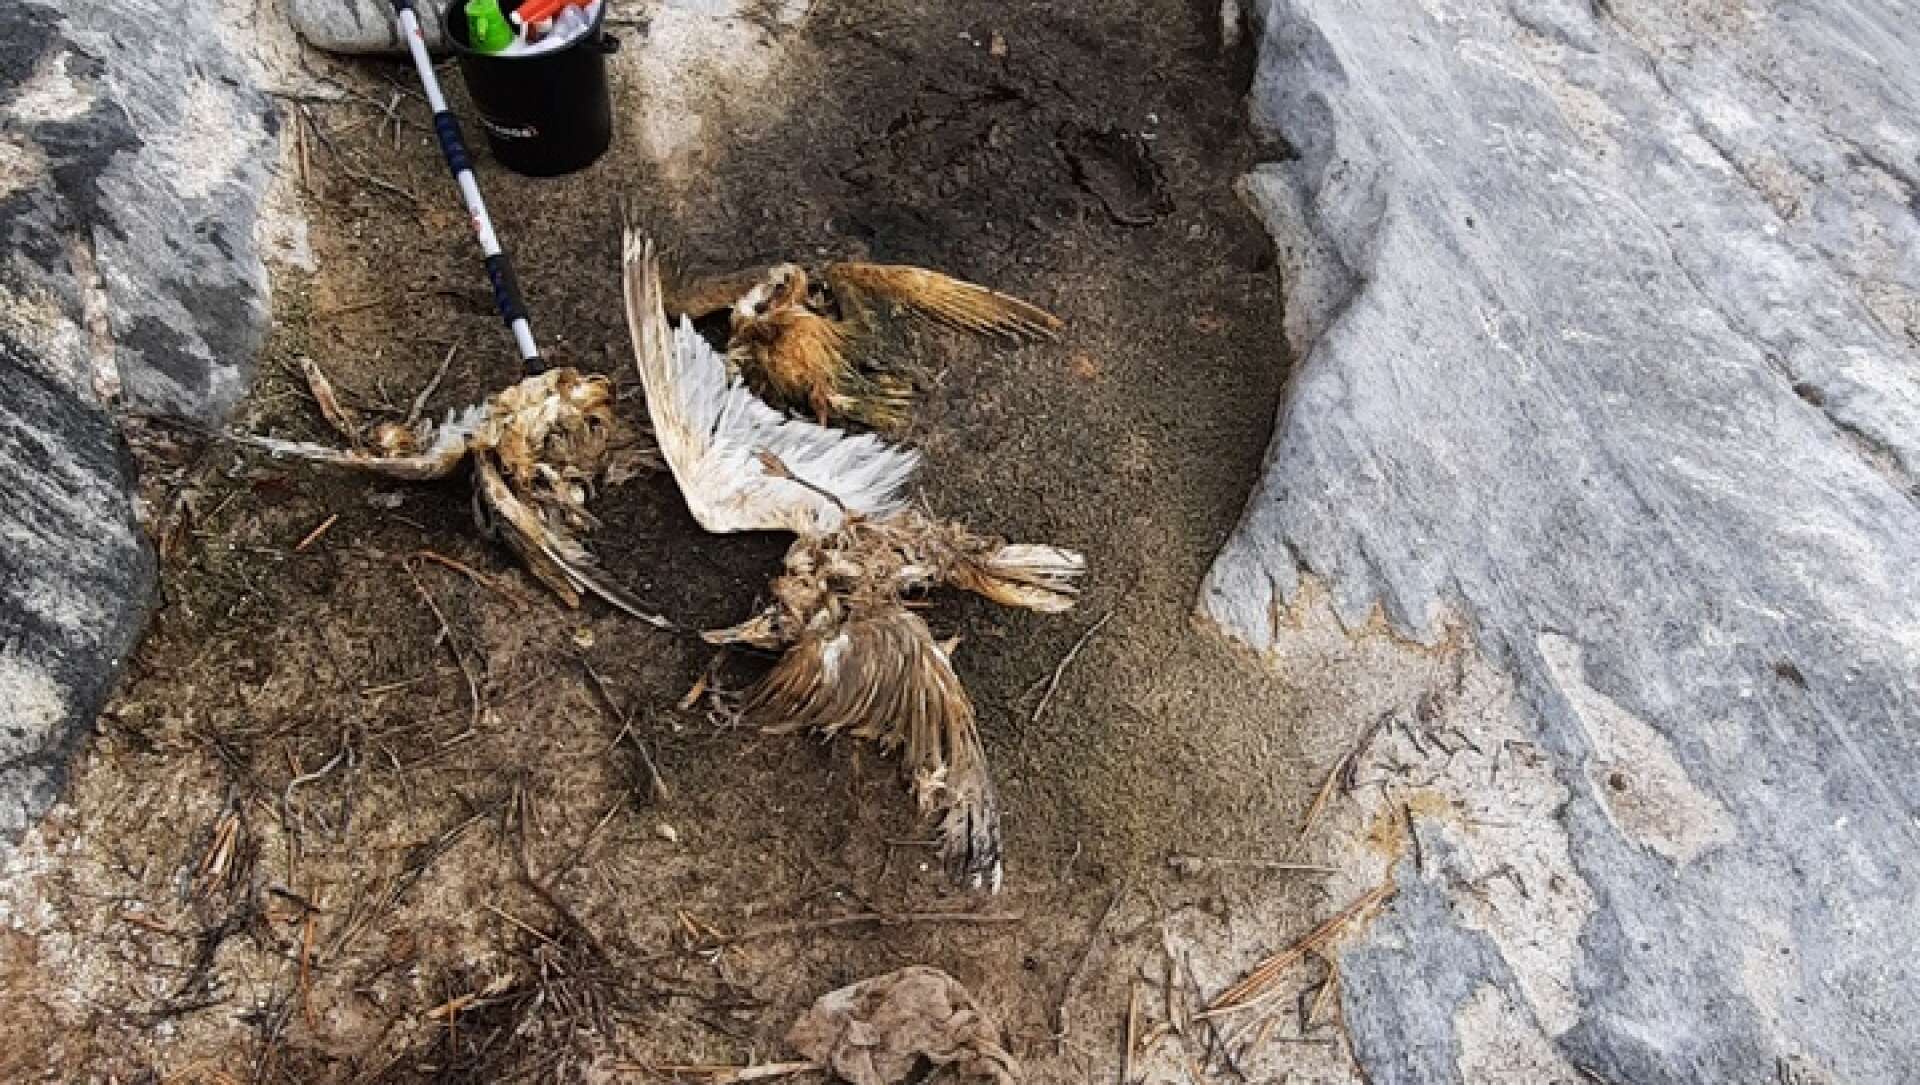 Döda gråtrutar upptäcktes på Mittskär.